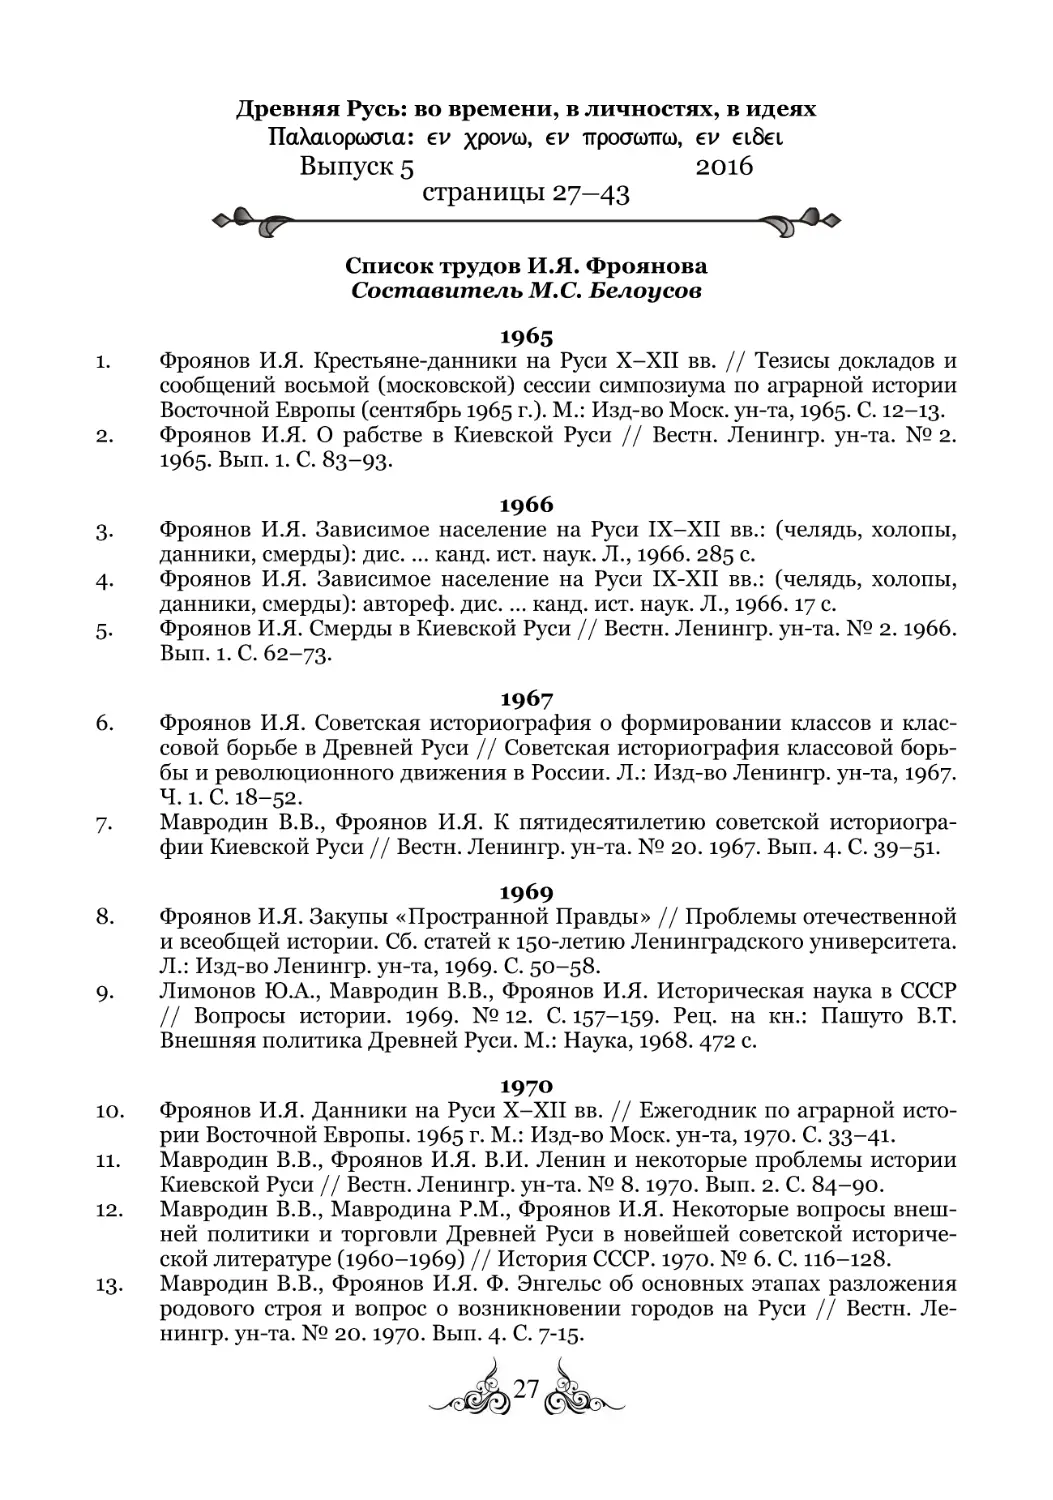 Список трудов И. Я. Фроянова